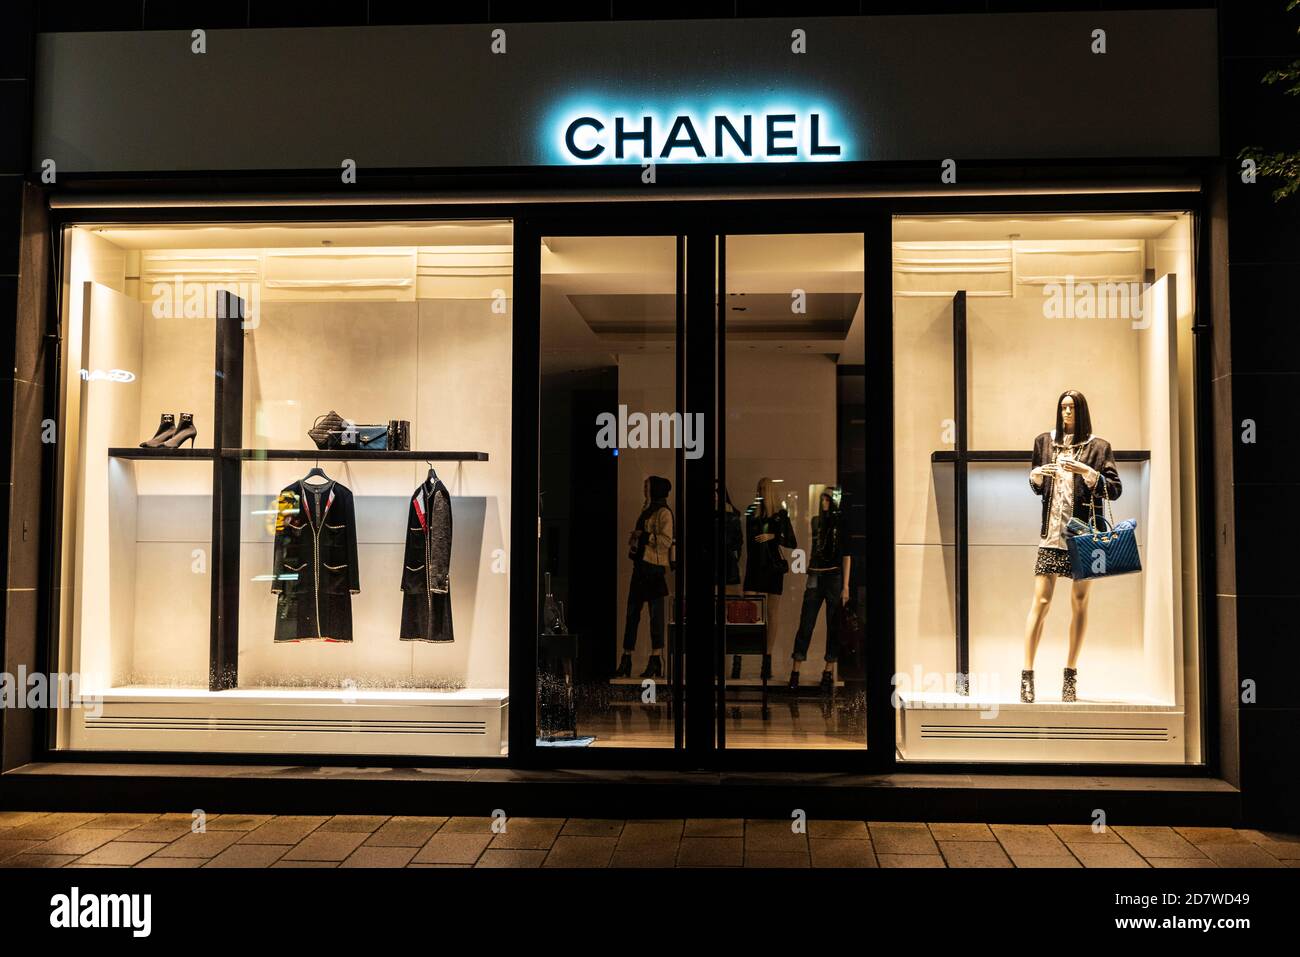 Alemania - 15 de agosto de 2019: Exhibición de una tienda de ropa de lujo Chanel por la noche en la calle Neuer Wall Hamburgo, Alemania Fotografía de stock - Alamy